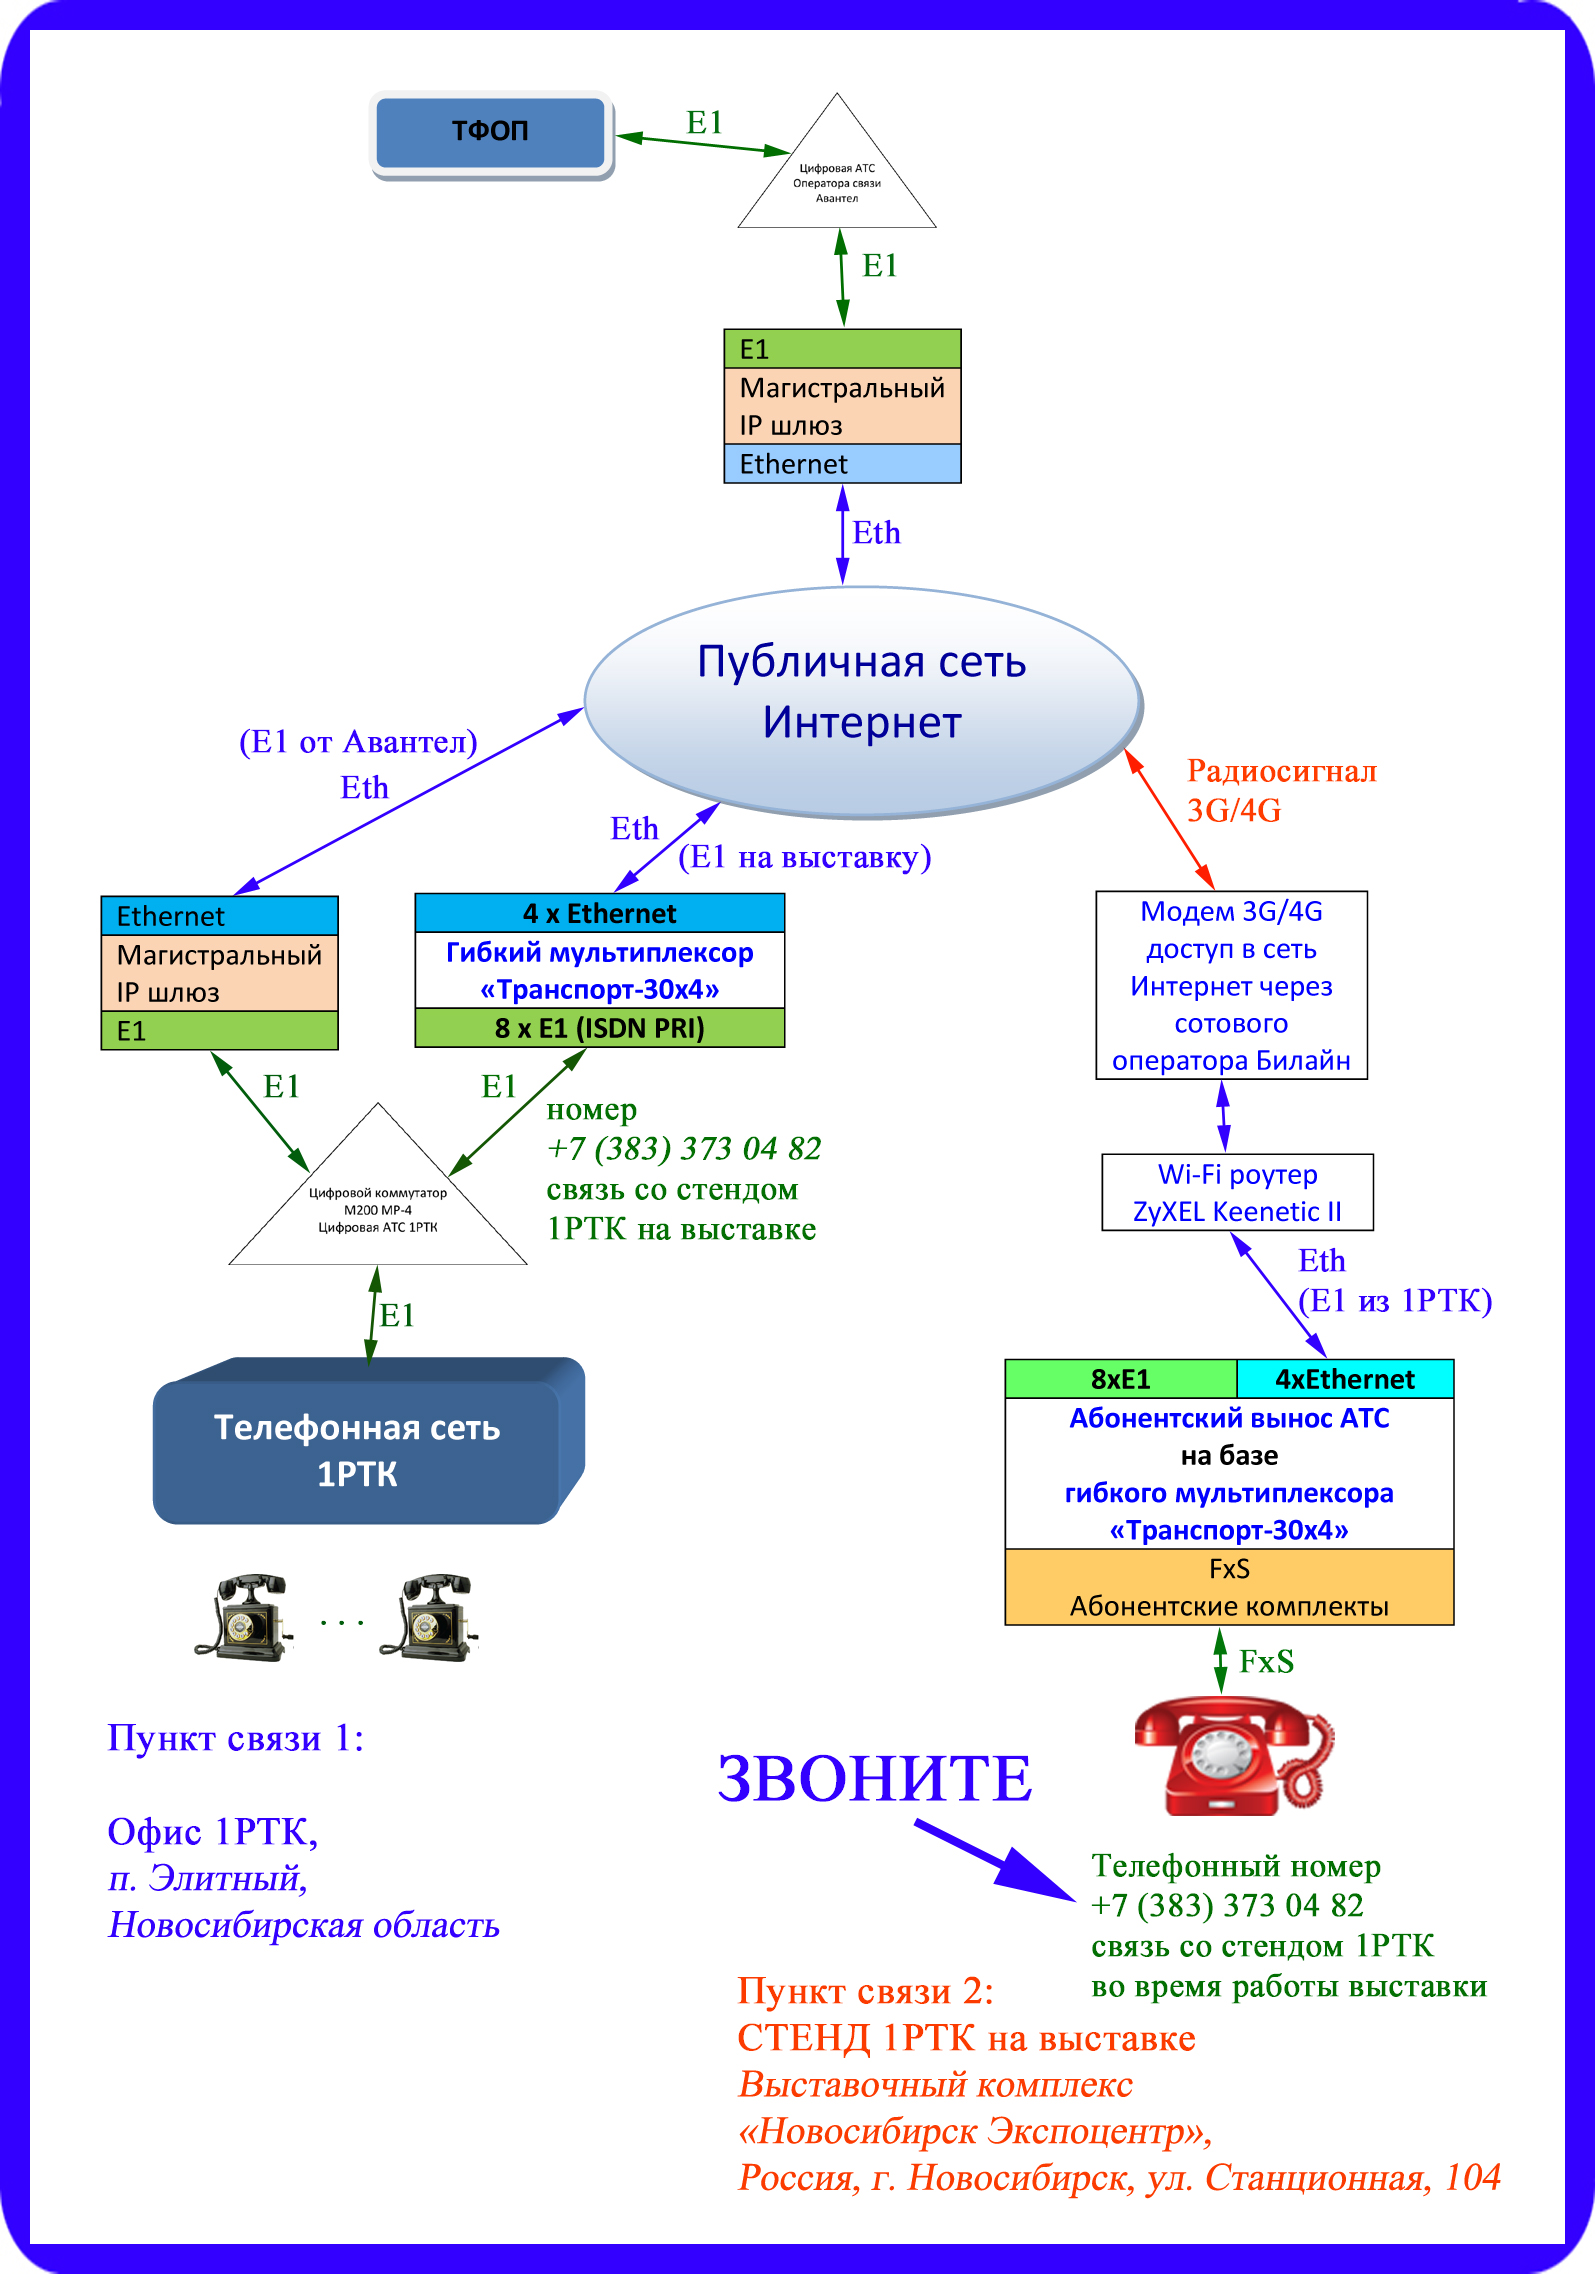 Схема организации связи Абонентский вынос АТС через Интернет от 1РТК